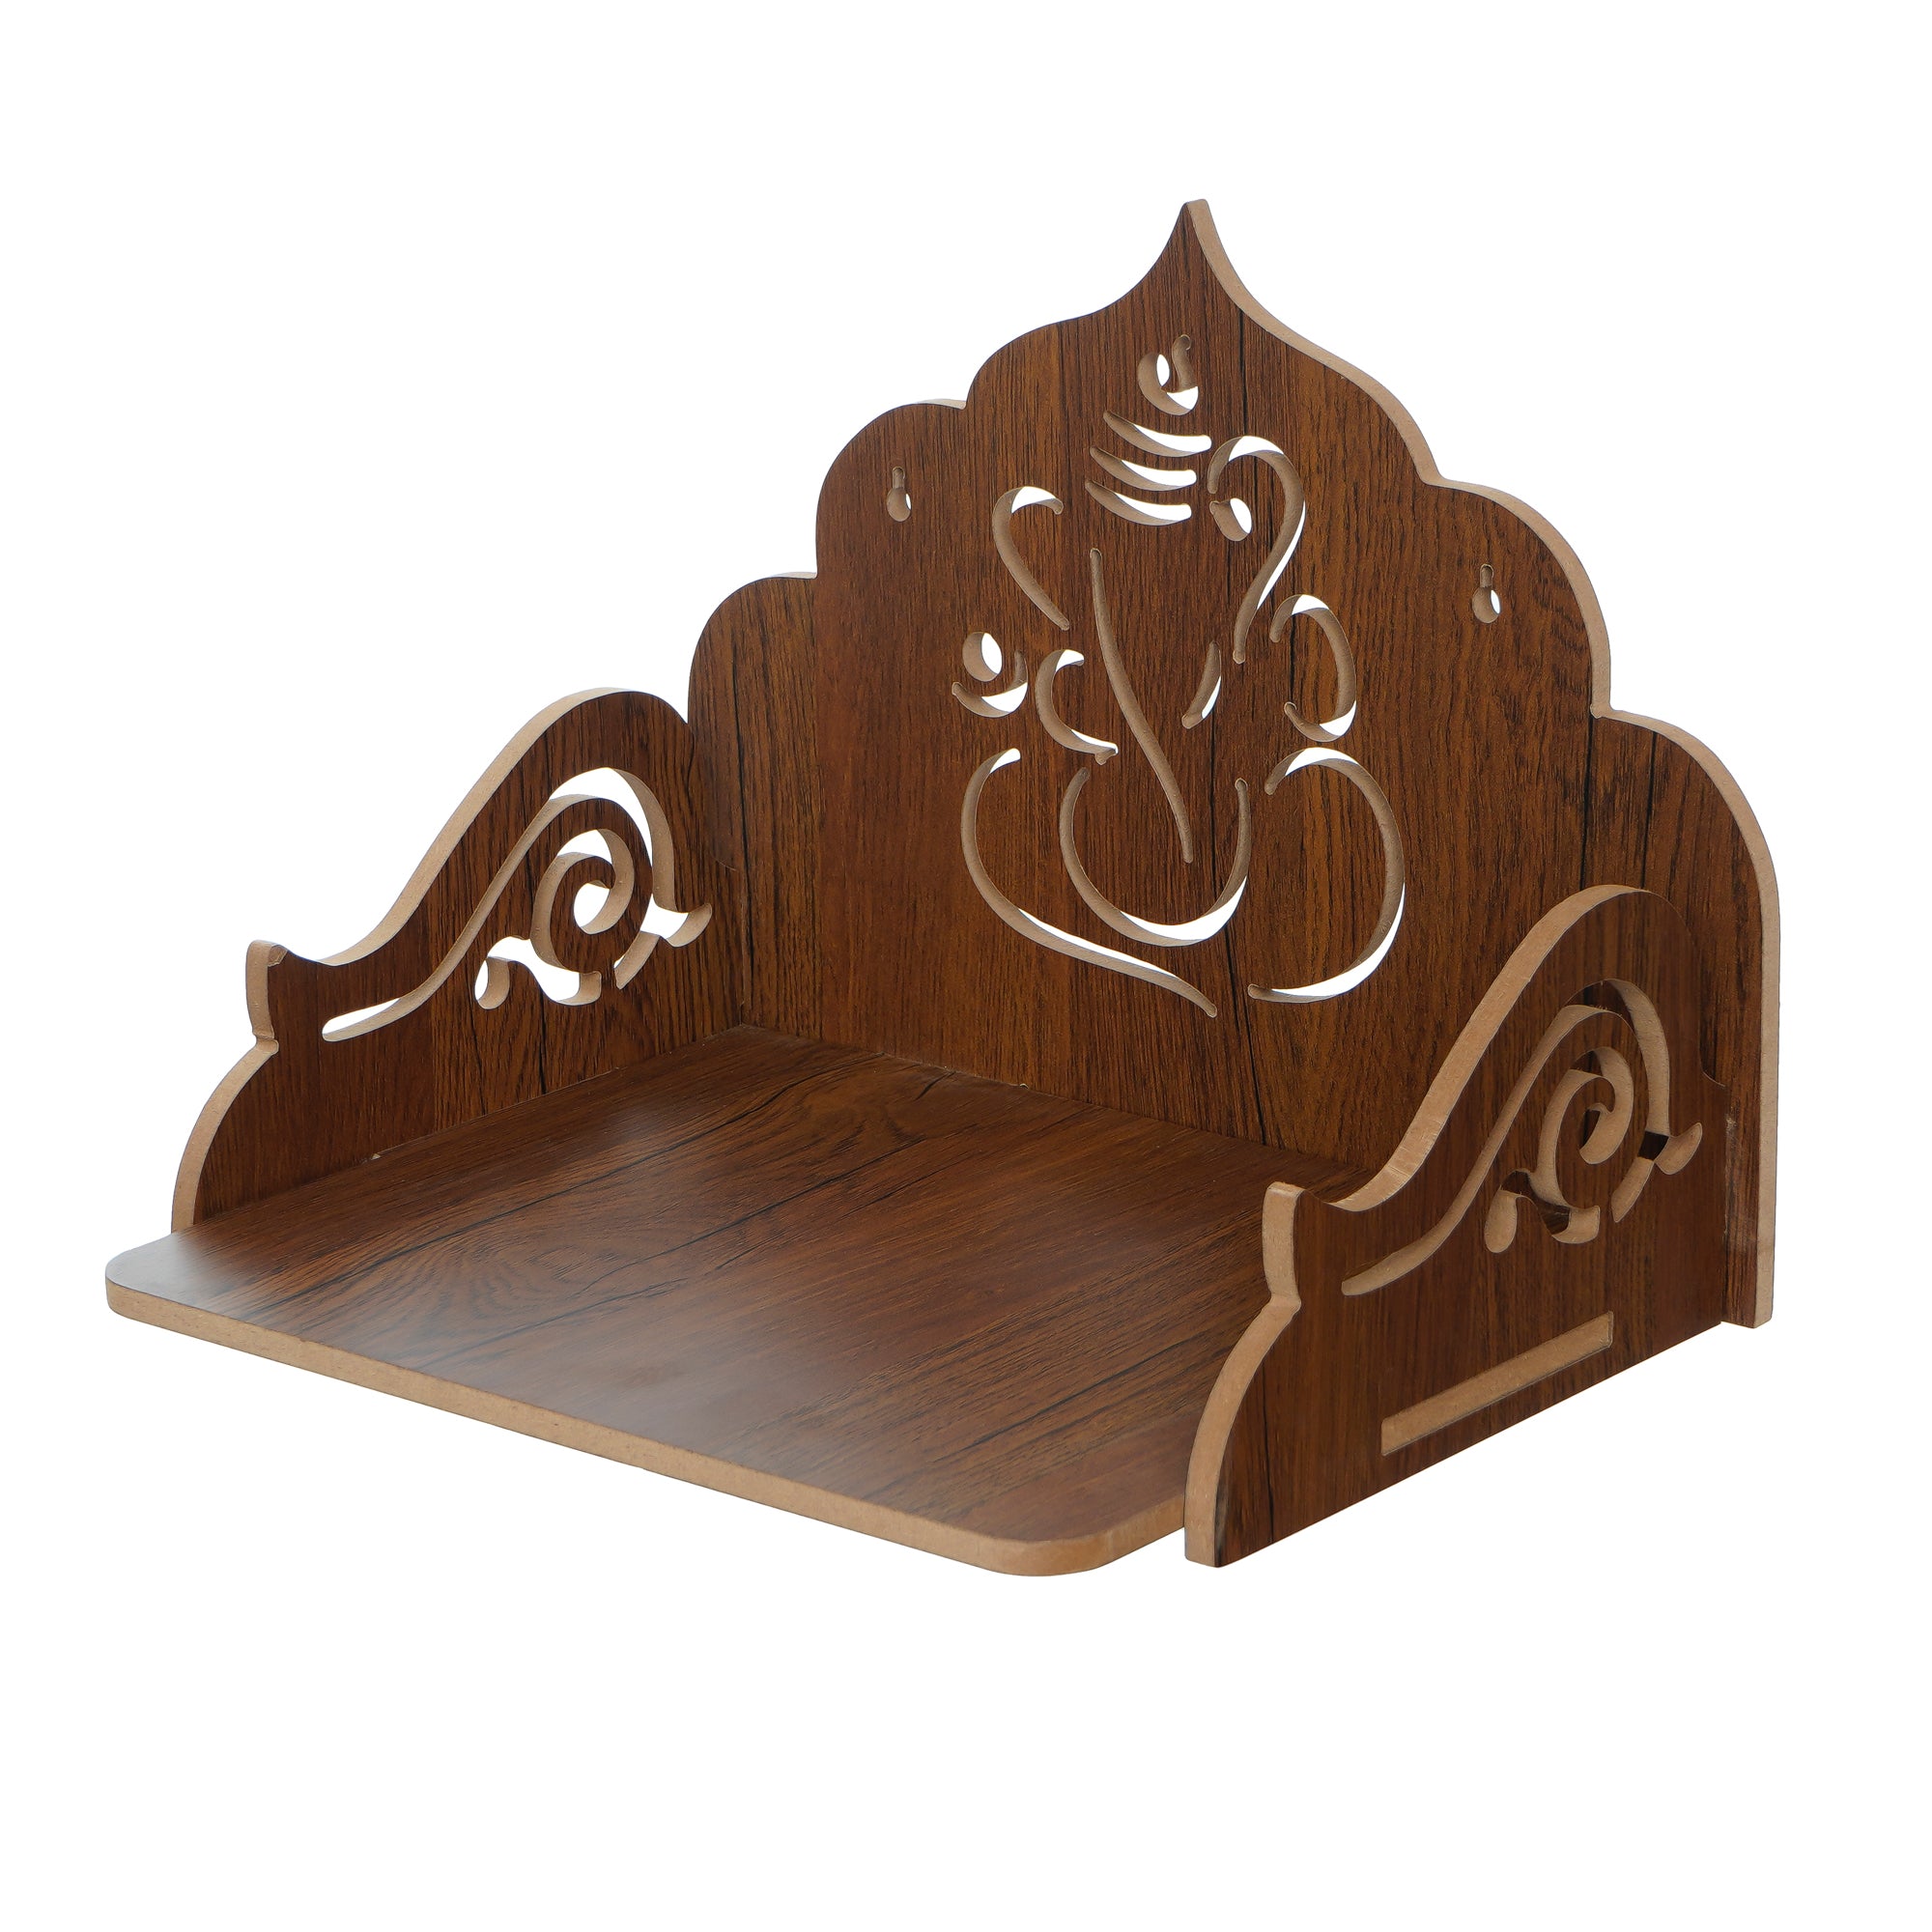 Ganesha Design Laminated Wood Pooja Temple/Mandir 4